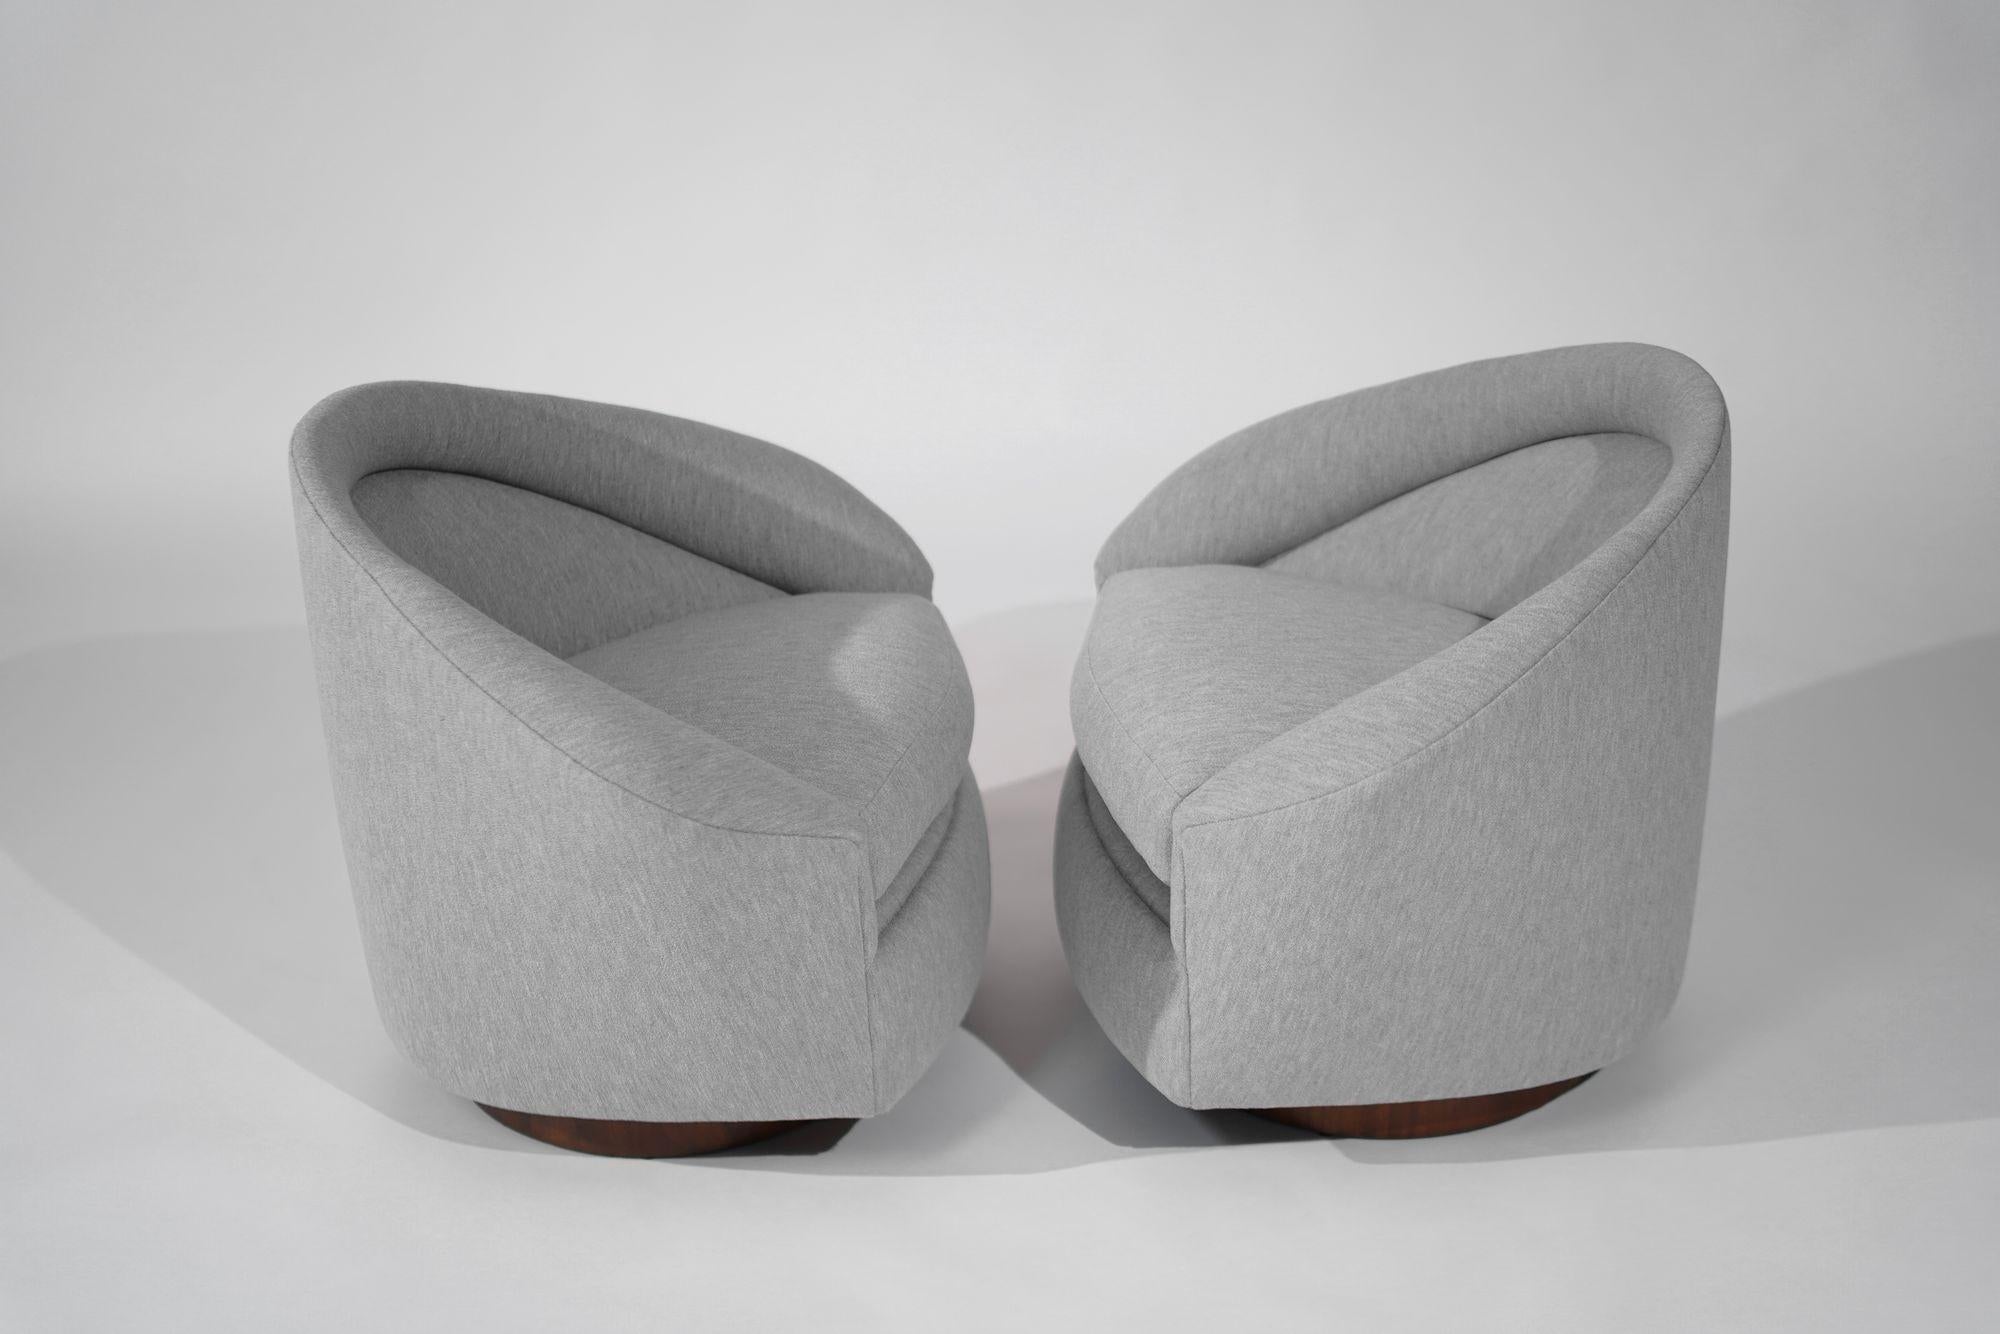 Craft Associates présente une trouvaille rare : un ensemble de chaises longues pivotantes restaurées d'Adrian Pearsall datant des années 1950. Rembourrées en luxueuse boucle grise par Holly HUNT, ces chaises pivotent et s'inclinent pour plus de